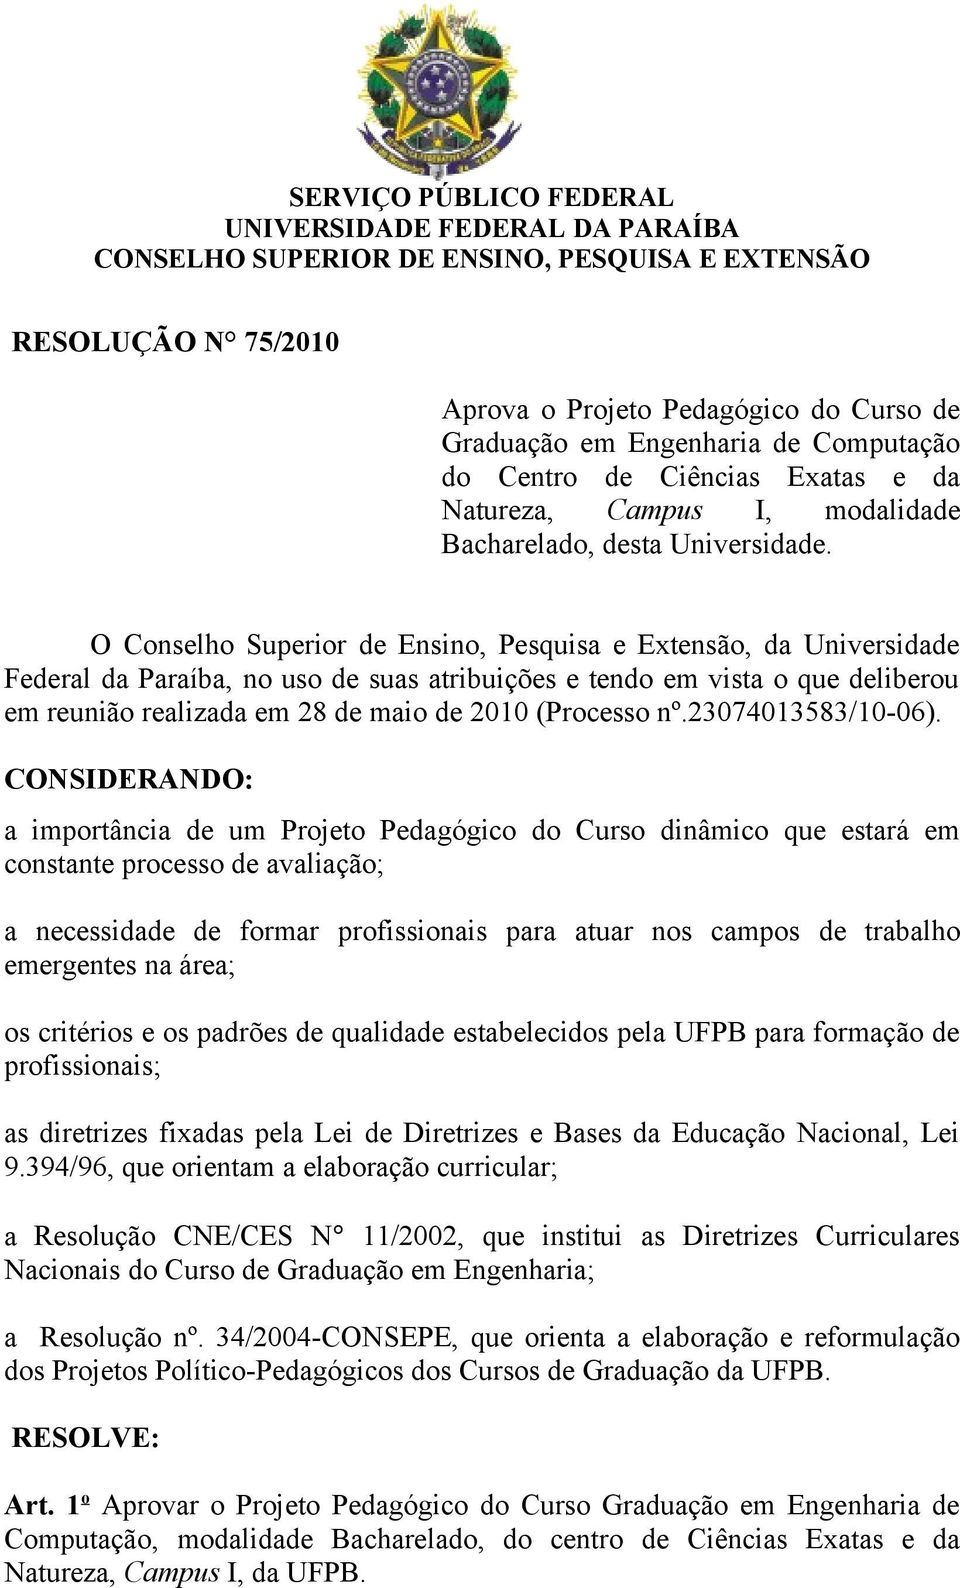 O Conselho Superior de Ensino, Pesquisa e Extensão, da Universidade Federal da Paraíba, no uso de suas atribuições e tendo em vista o que deliberou em reunião realizada em 28 de maio de 2010